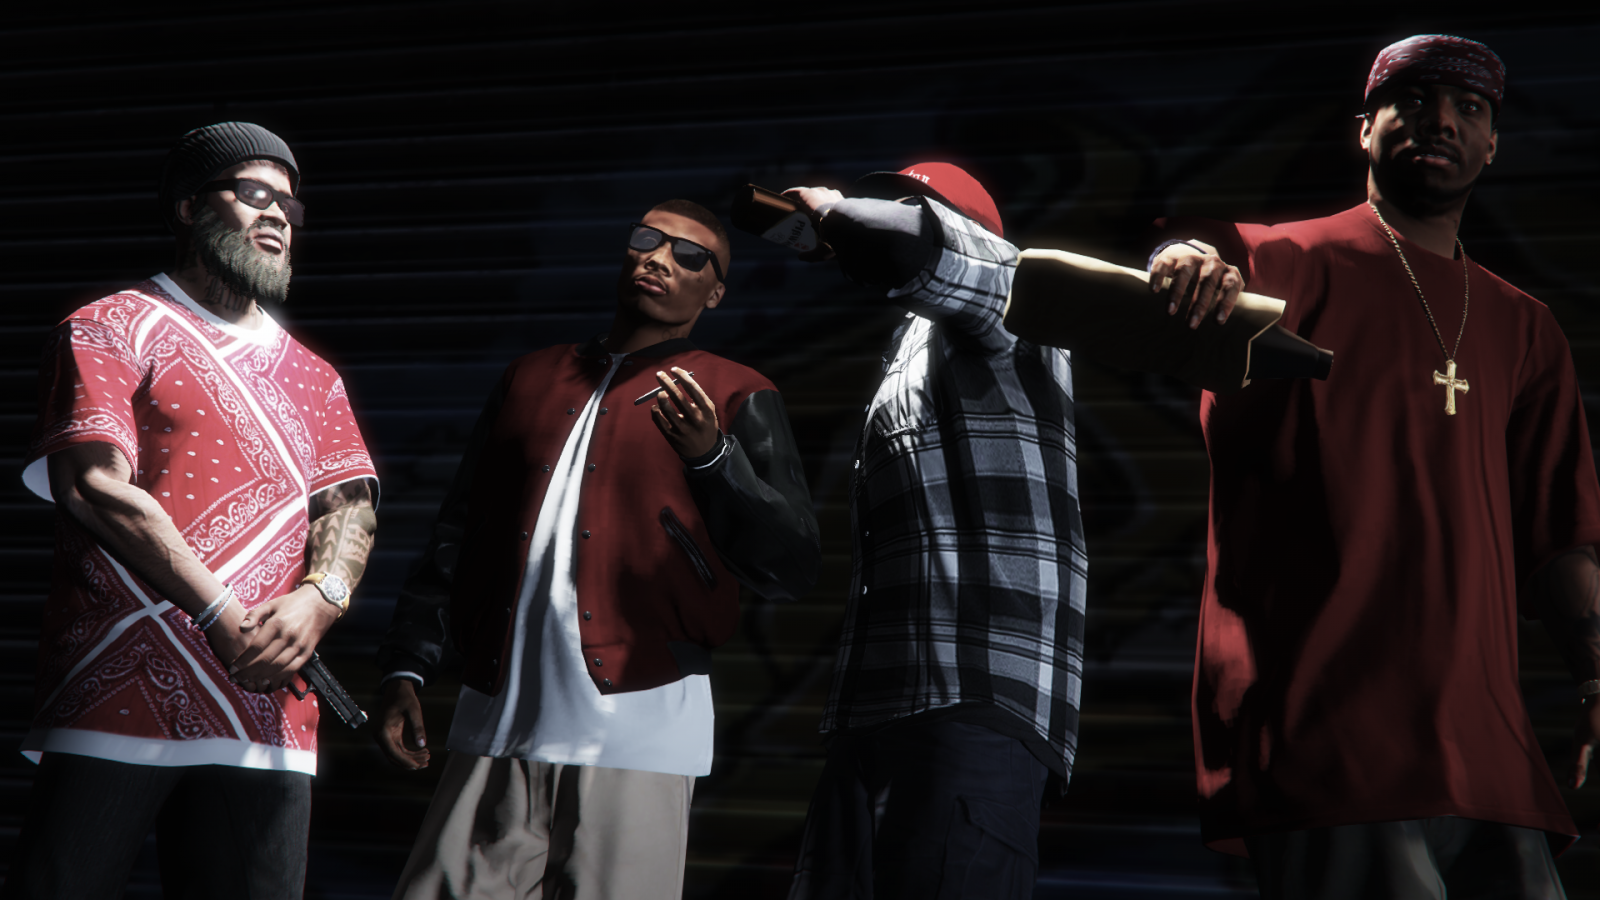 Blood street gang гта 5 (120) фото